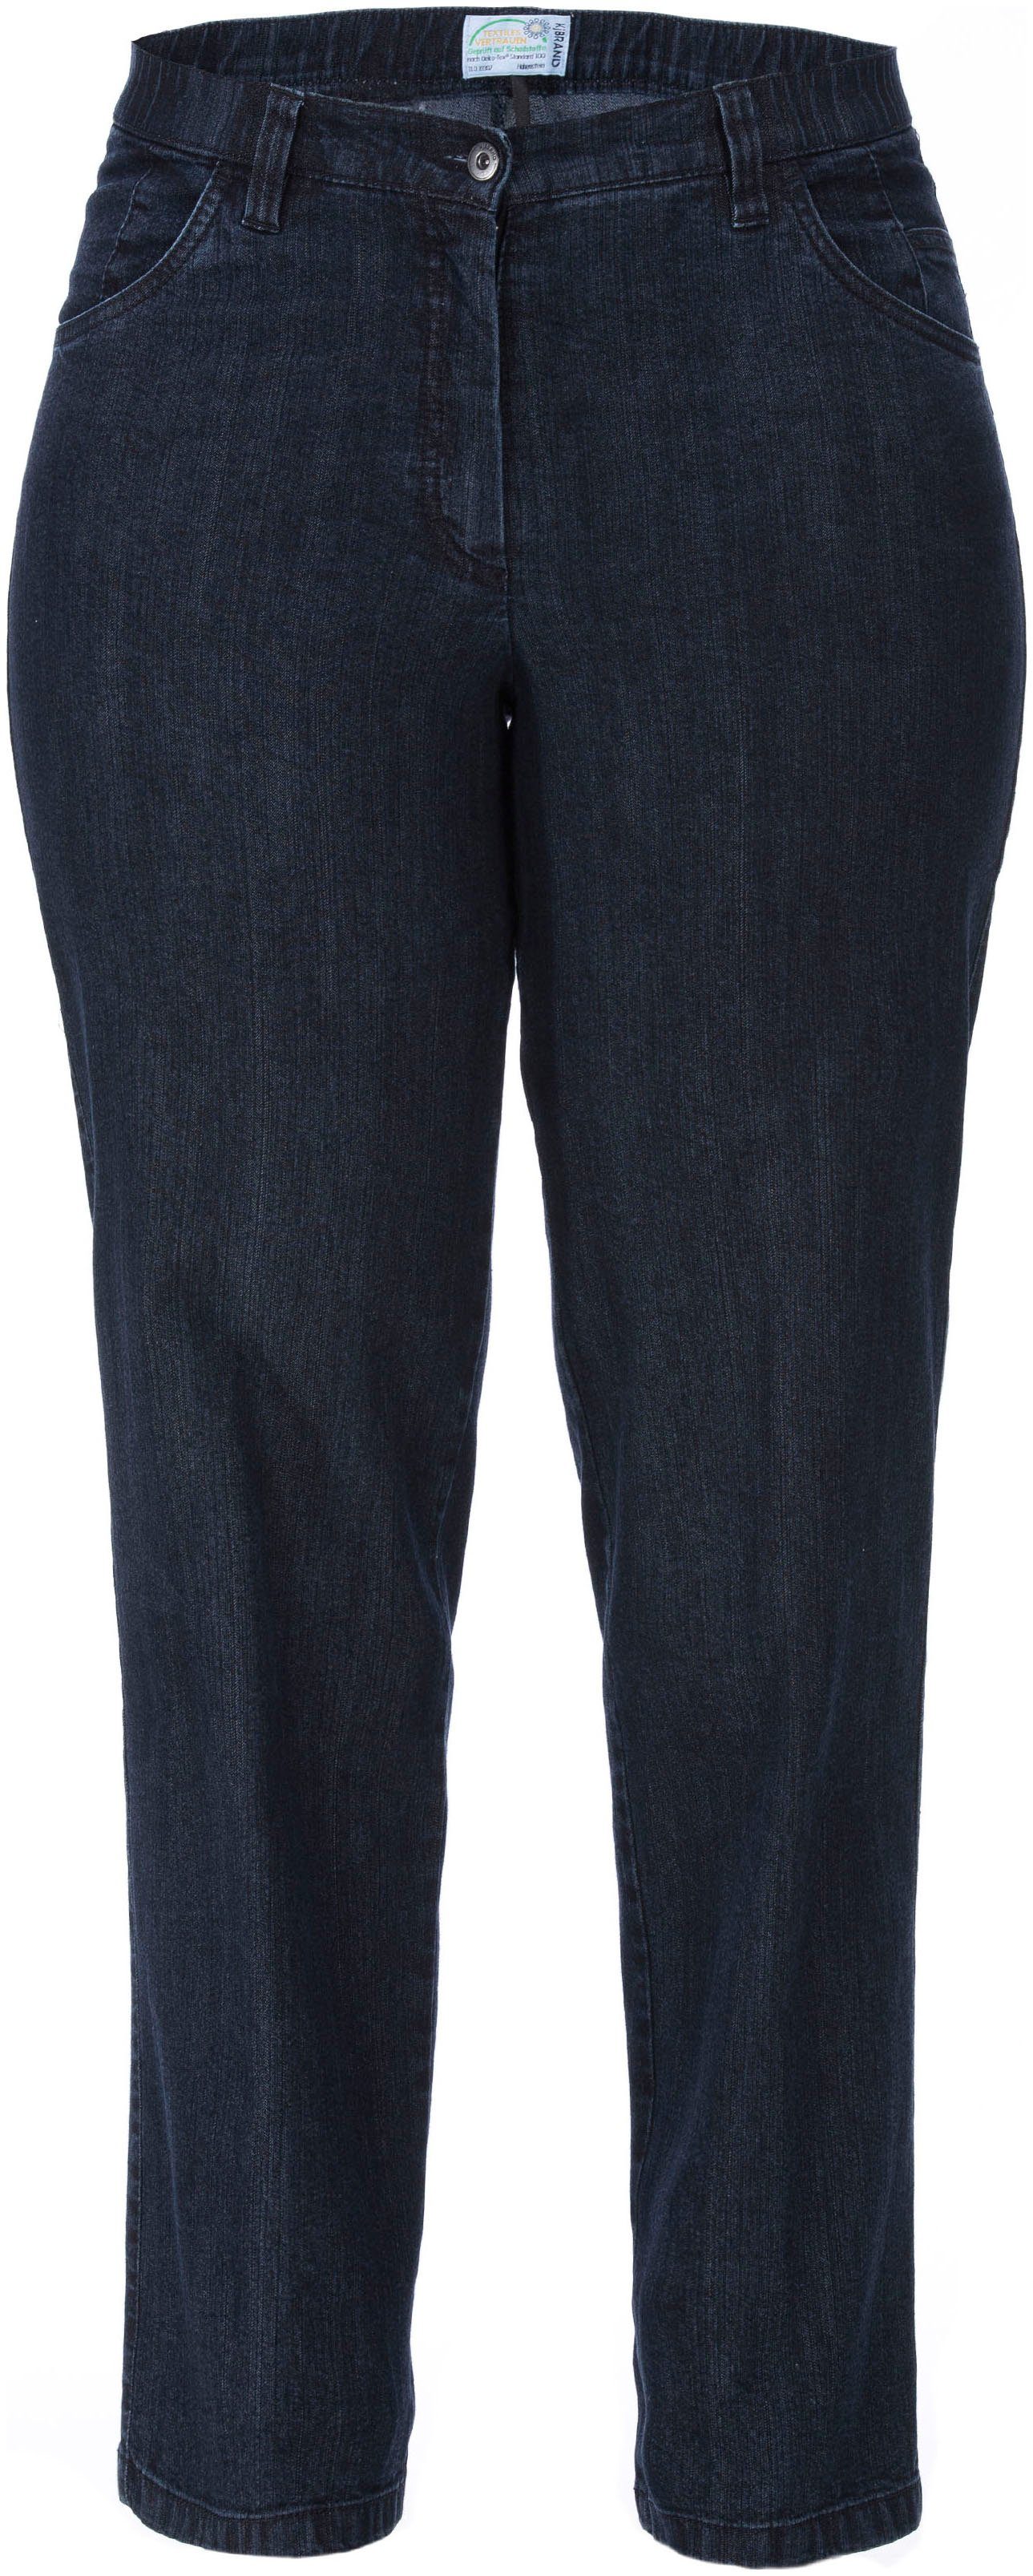 KjBRAND Stretch-Jeans dark-blue Babsie Denim Stretch-Anteil mit Stretch